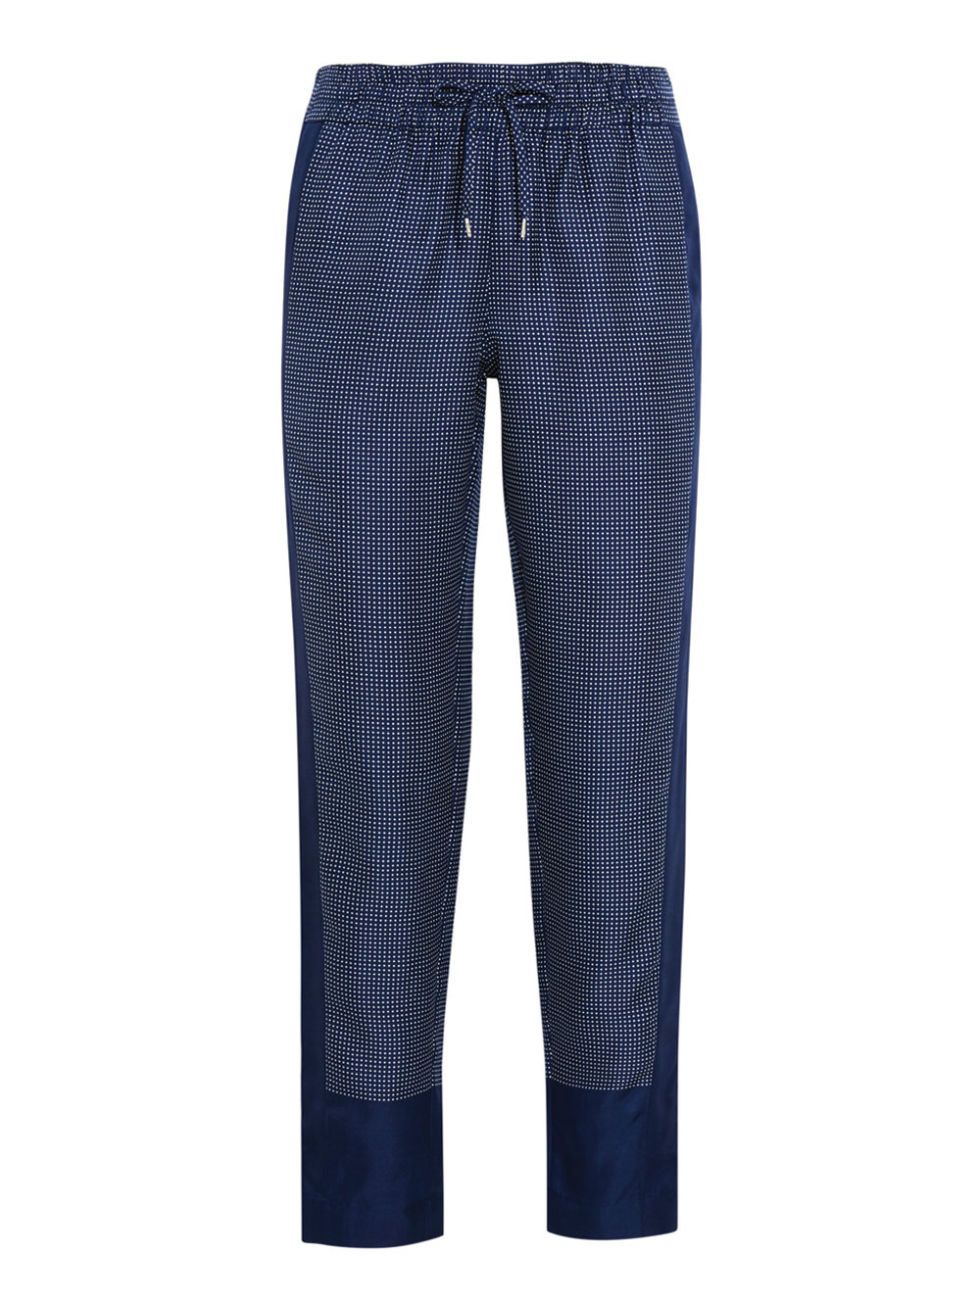 Blue, Denim, Trousers, Human leg, Textile, Style, Electric blue, Pattern, Cobalt blue, Azure, 